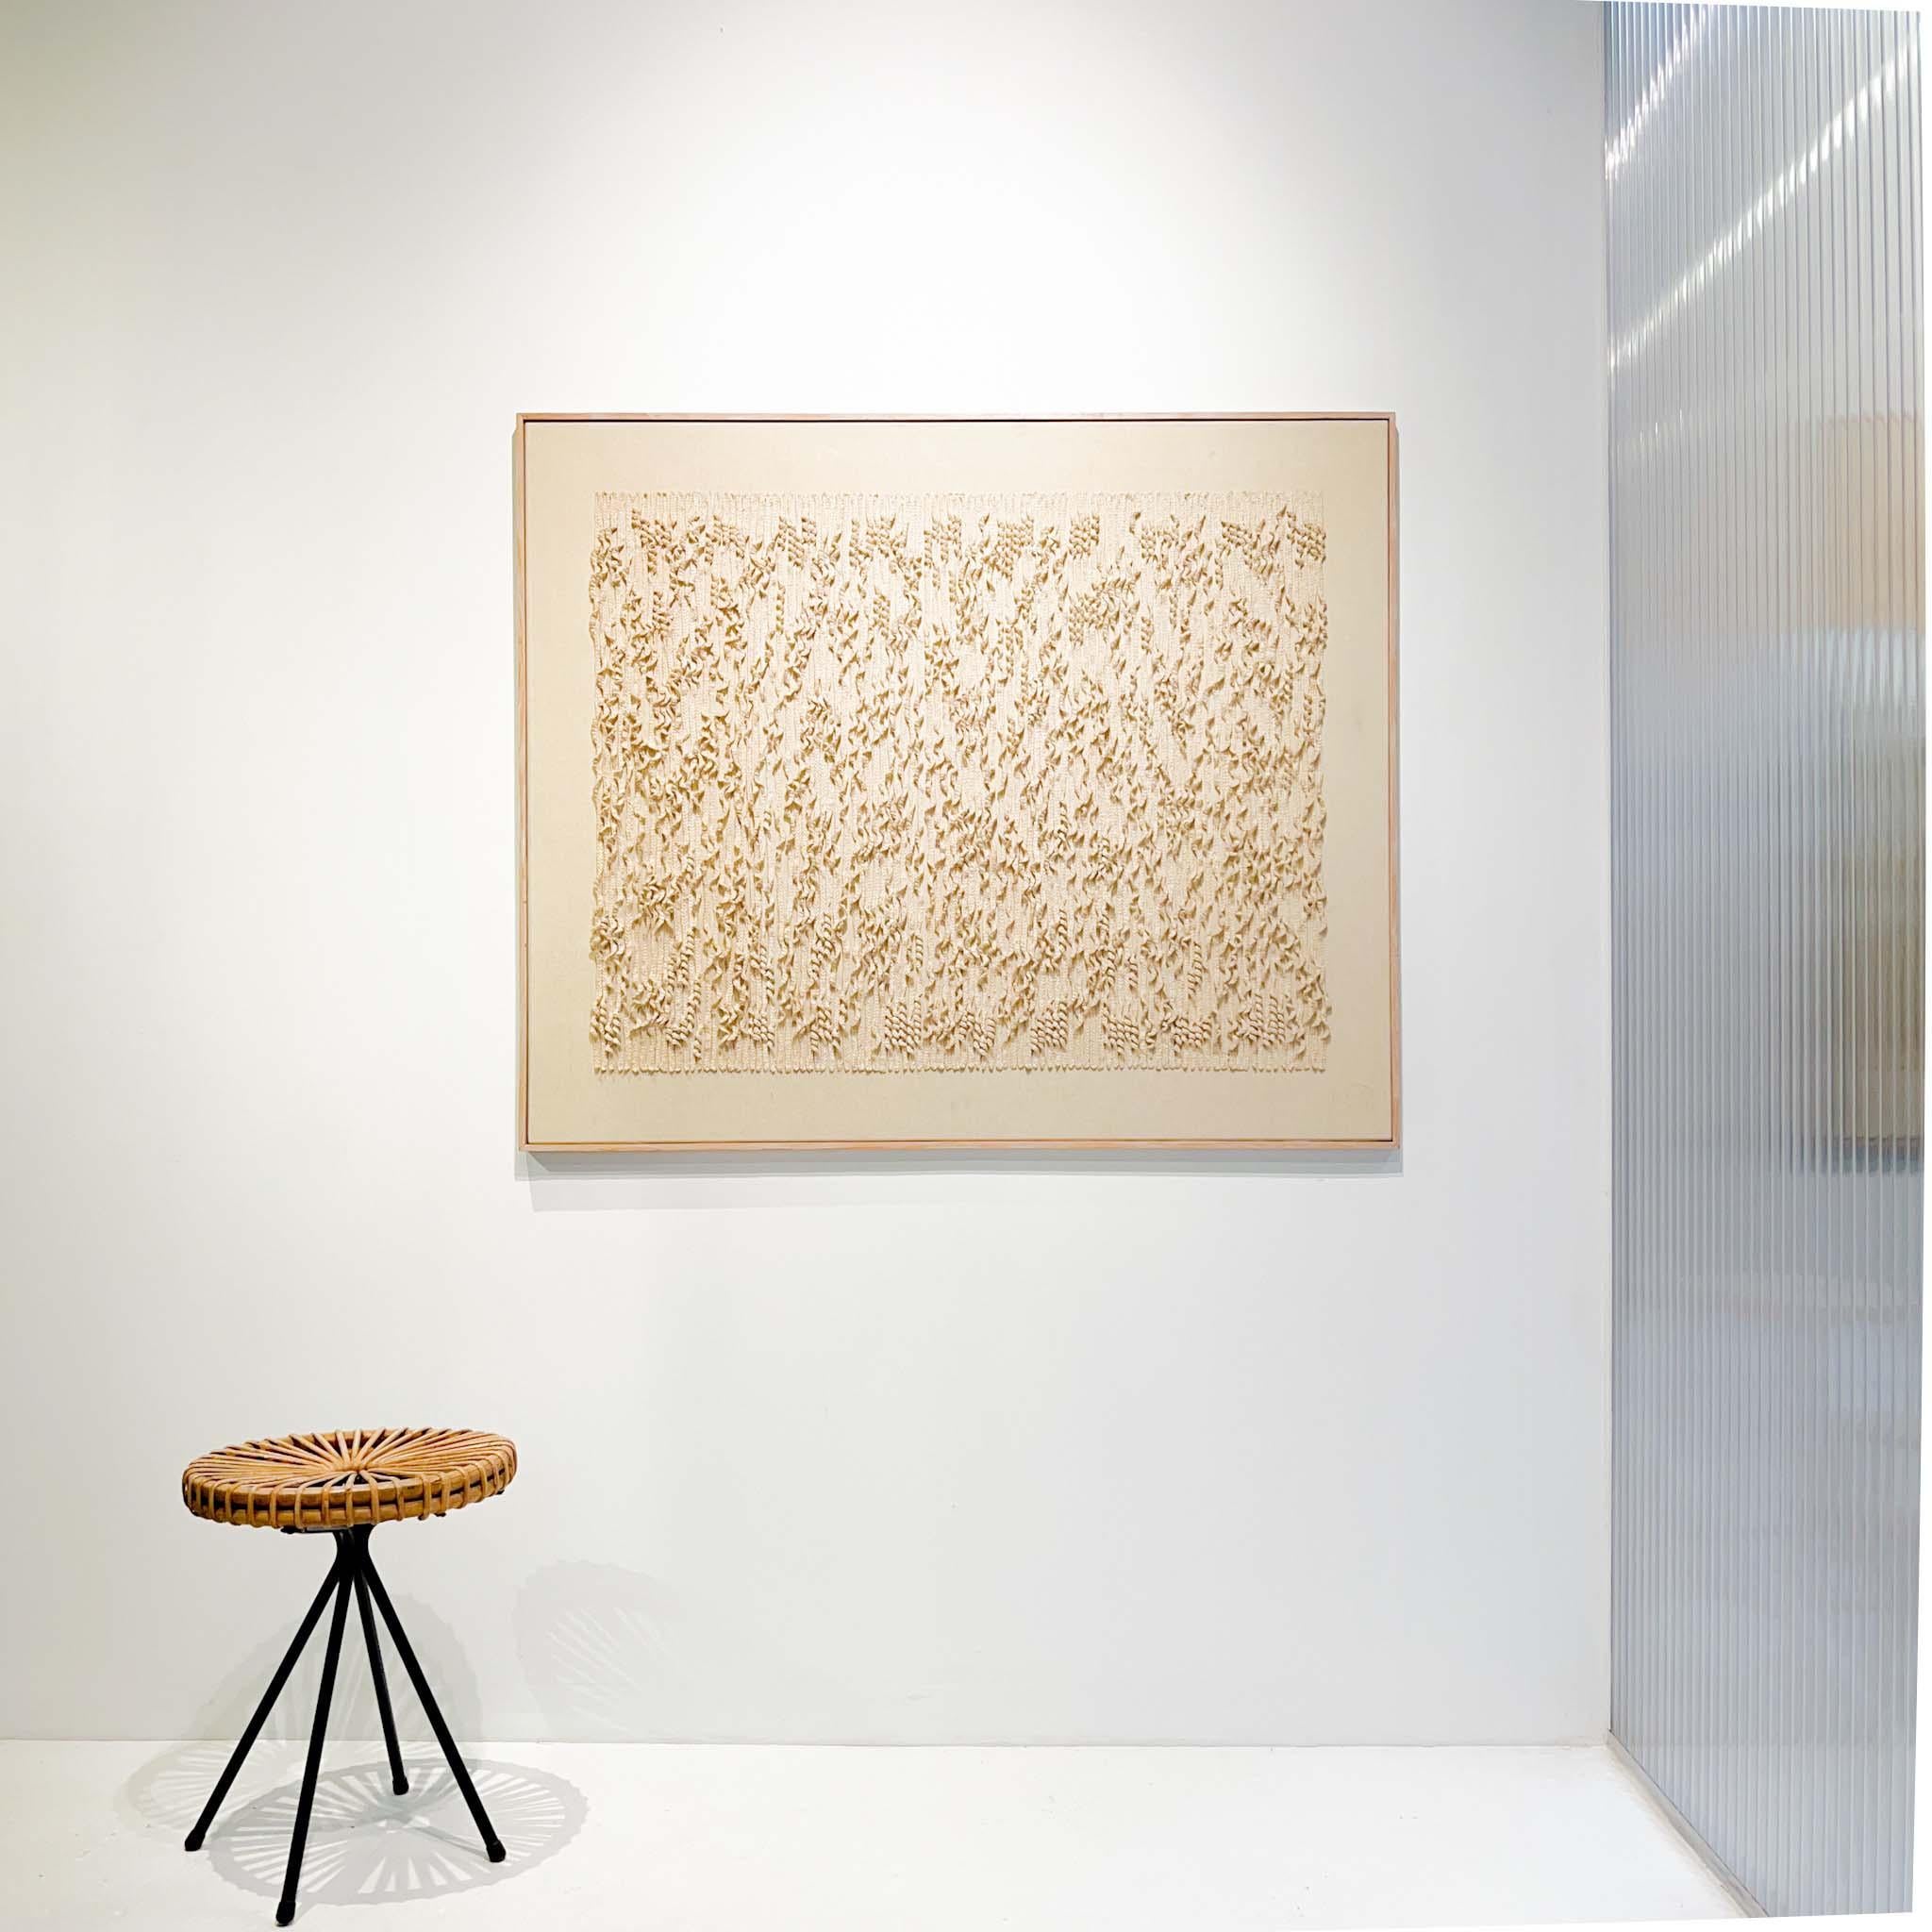 Großes gerahmtes minimalistisches ZERO-Kunstwerk in Textil von einem bekannten niederländischen Künstler, signiert und datiert.

Durch den begrenzten Einsatz von Farbe und MATERIAL entsteht ein interessantes Spiel mit Licht und Schatten, das an